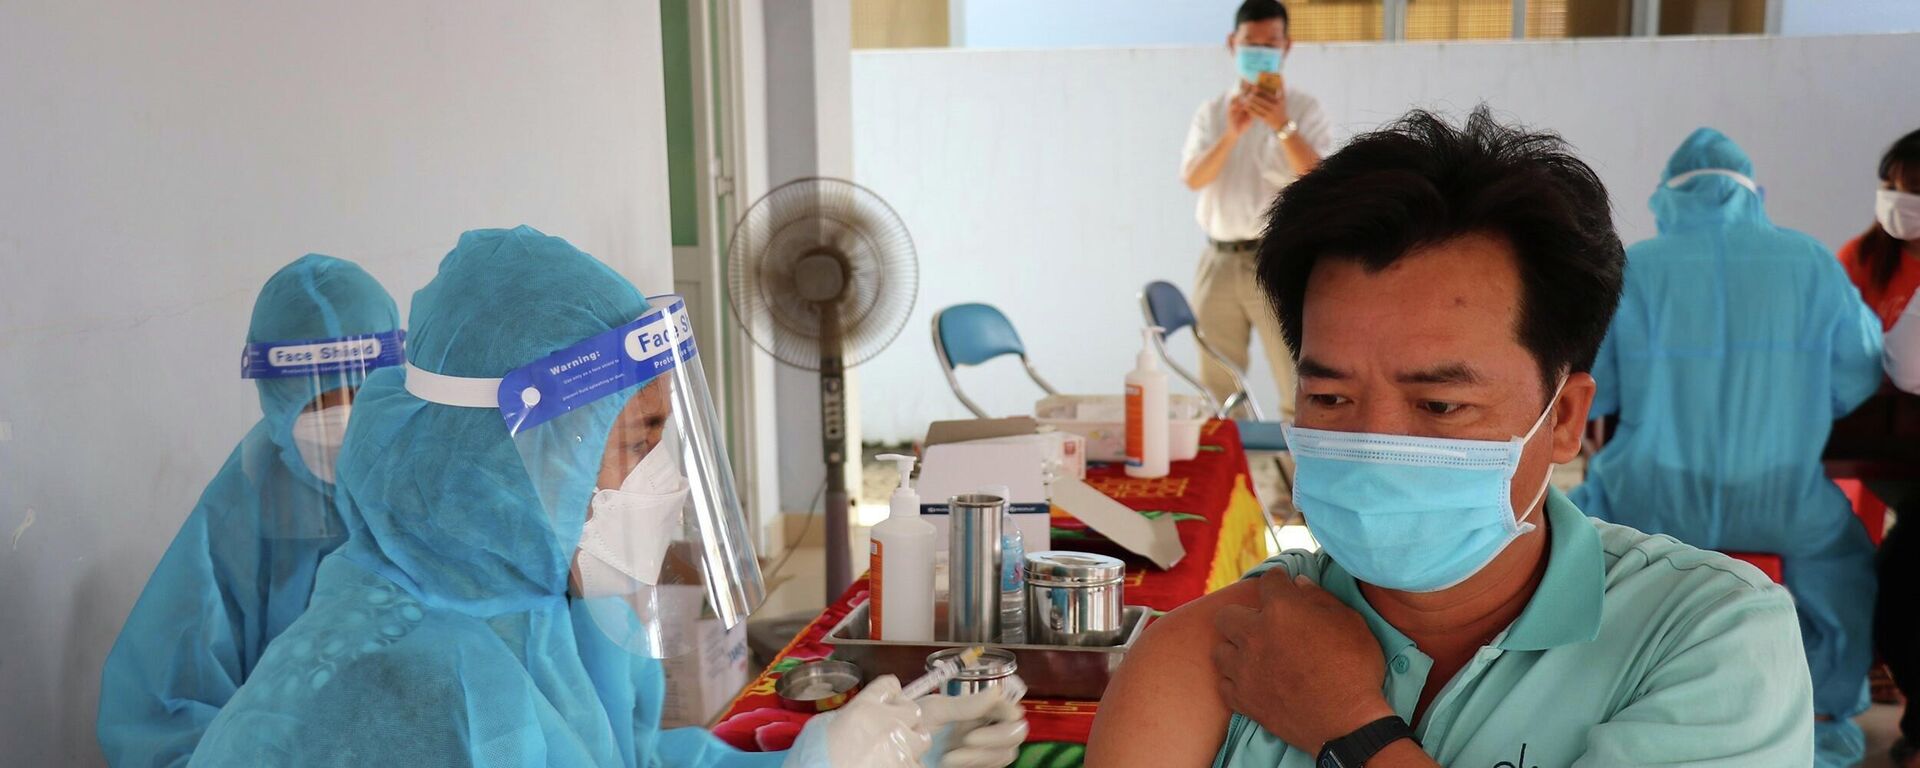 Đến nay, đã có 198.900 công nhân, người lao động đã được tiêm vaccine phòng COVID-19, trong đó tỷ lệ tiêm mũi 1 đạt 74,7%, mũi 2 đạt 22,3%.  - Sputnik Việt Nam, 1920, 17.11.2021